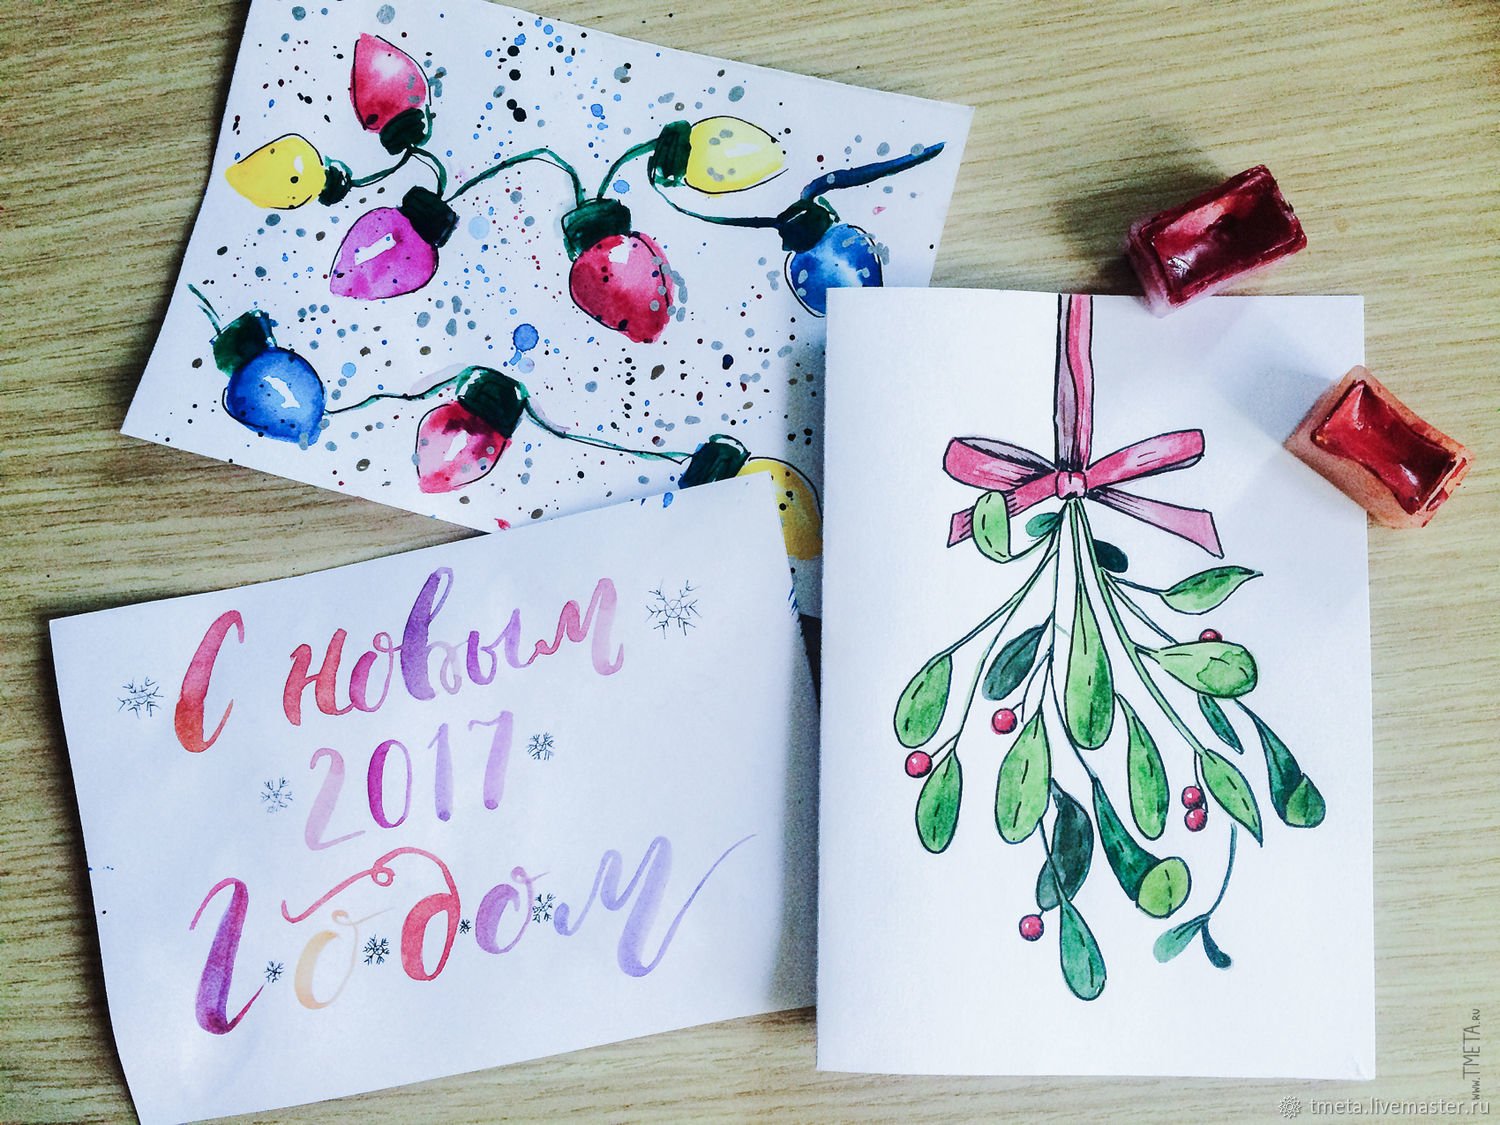 Простые открытки рисунки. Идеи для рисования новогодних открыток. Нарисовать новогоднюю открытку своими руками. Идеи для открыток на новый год рисунки. Маленькие открытки на новый год простые.